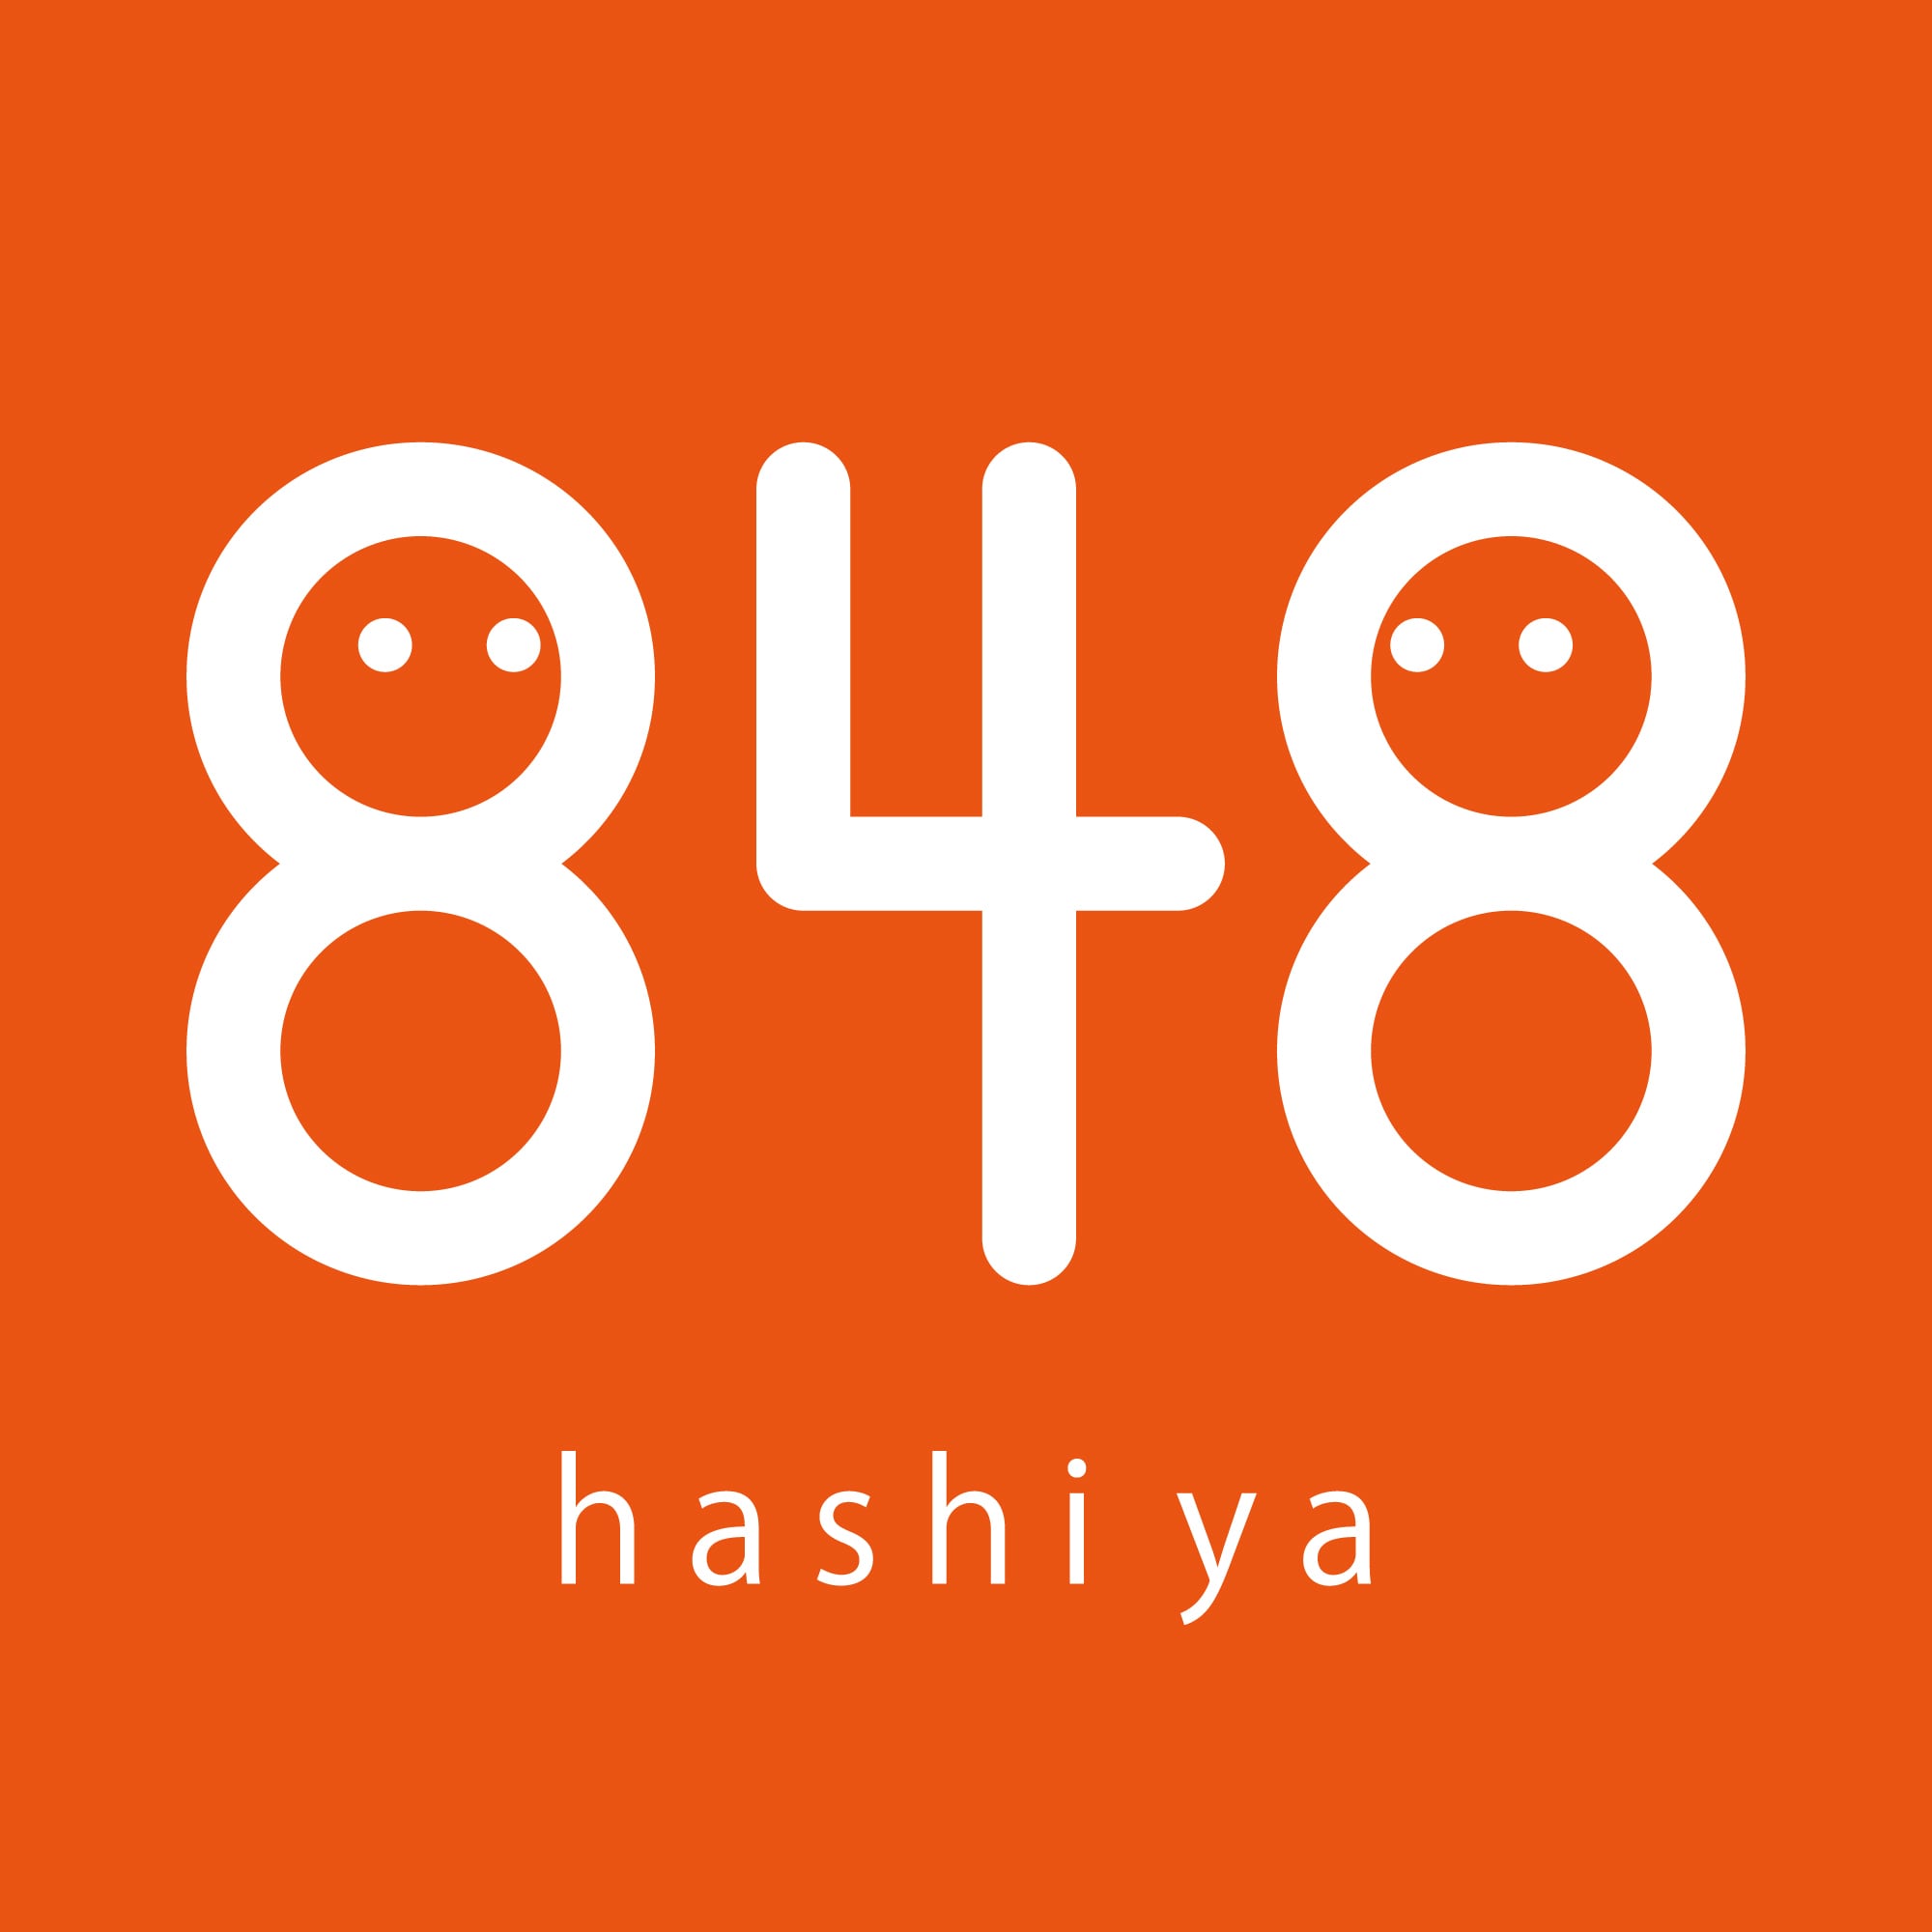 848 -hashi ya-